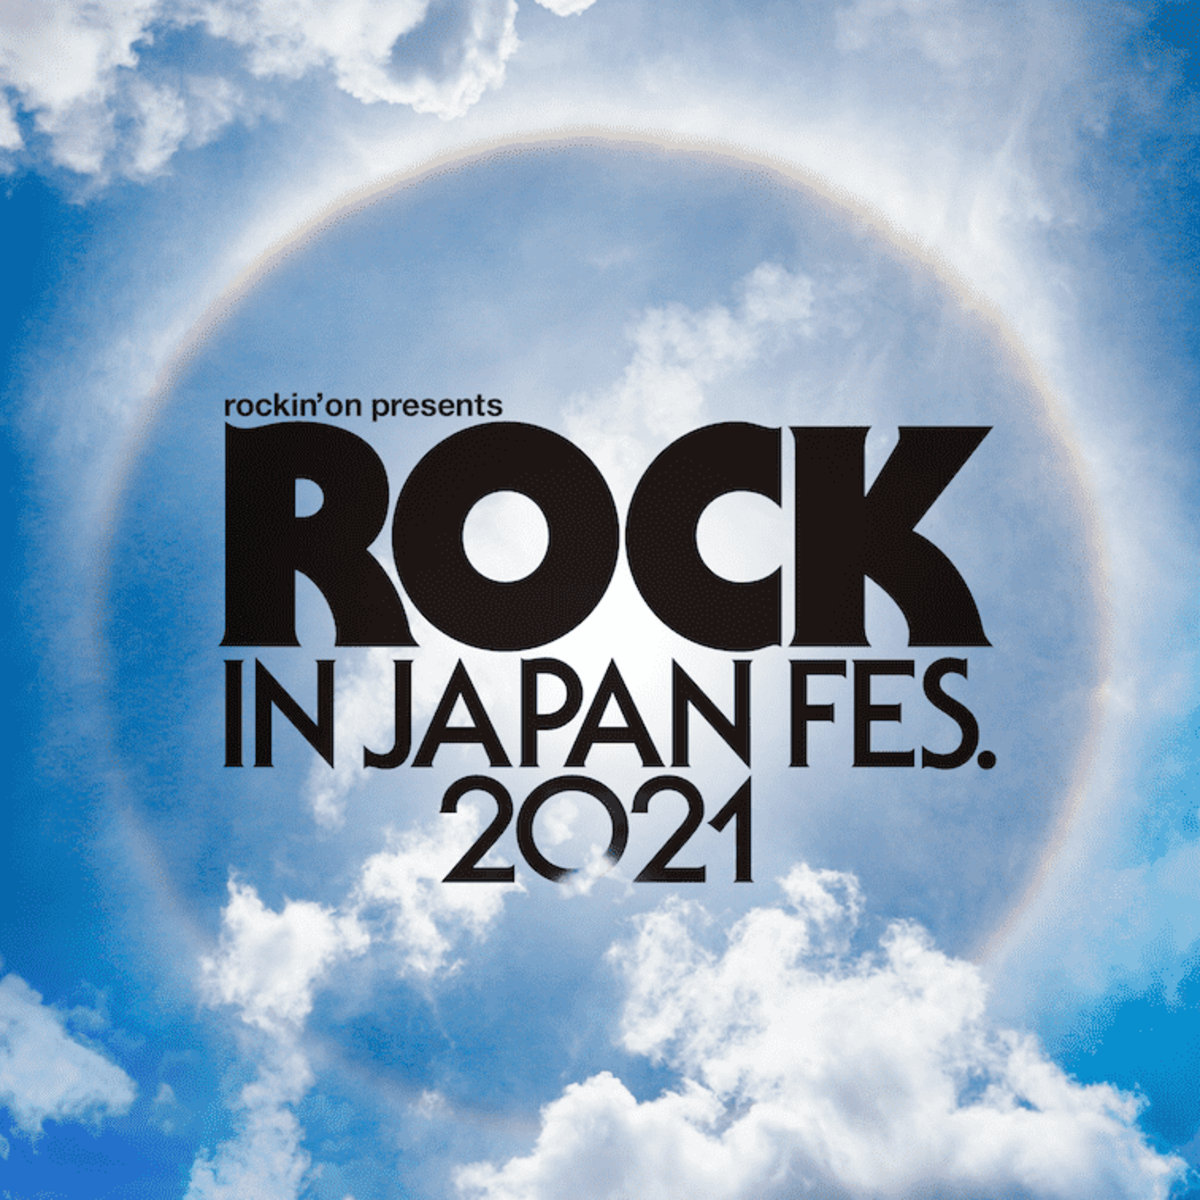 ROCK IN JAPAN FESTIVAL 2021